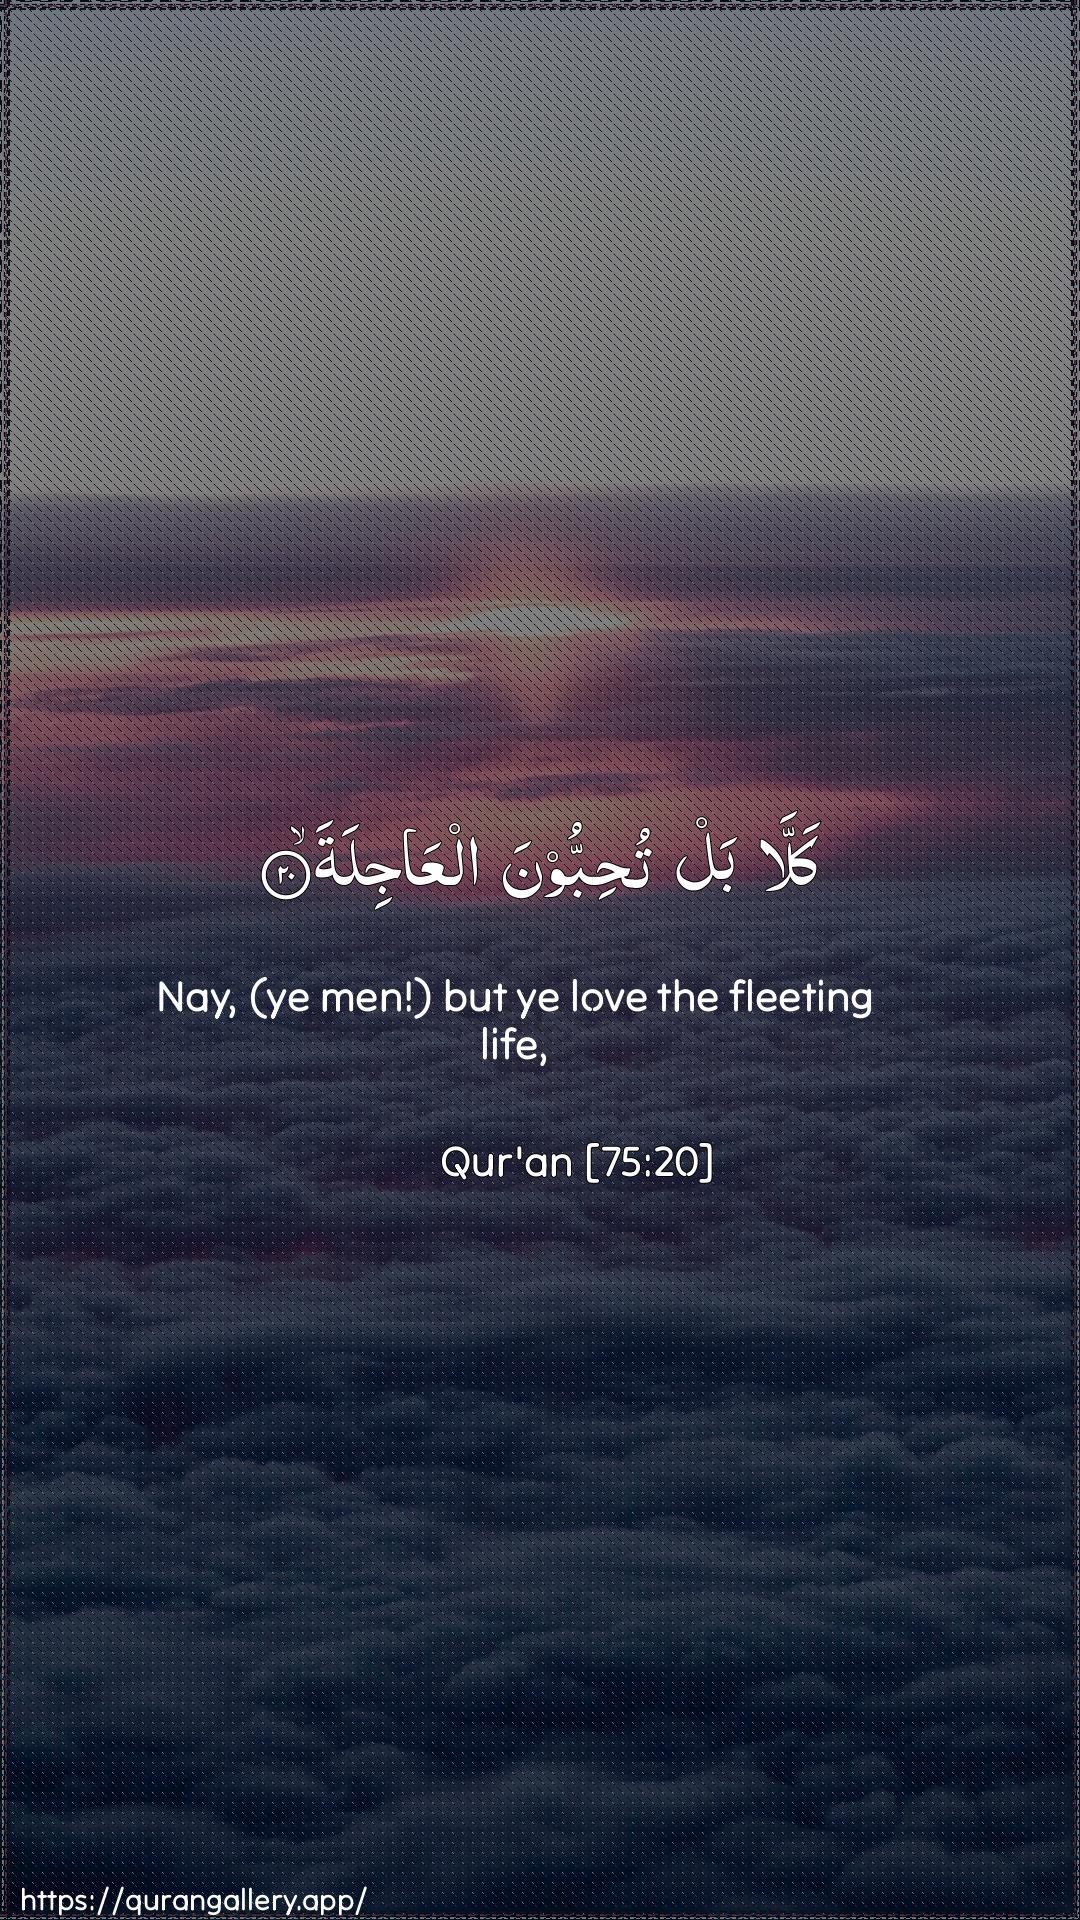 Surah Al-Qiyaama Ayah 20 of 75 HD Wallpaper: Download Beautiful vertical Quran Verse Image | Kalla bal tuhibboona alAAajila